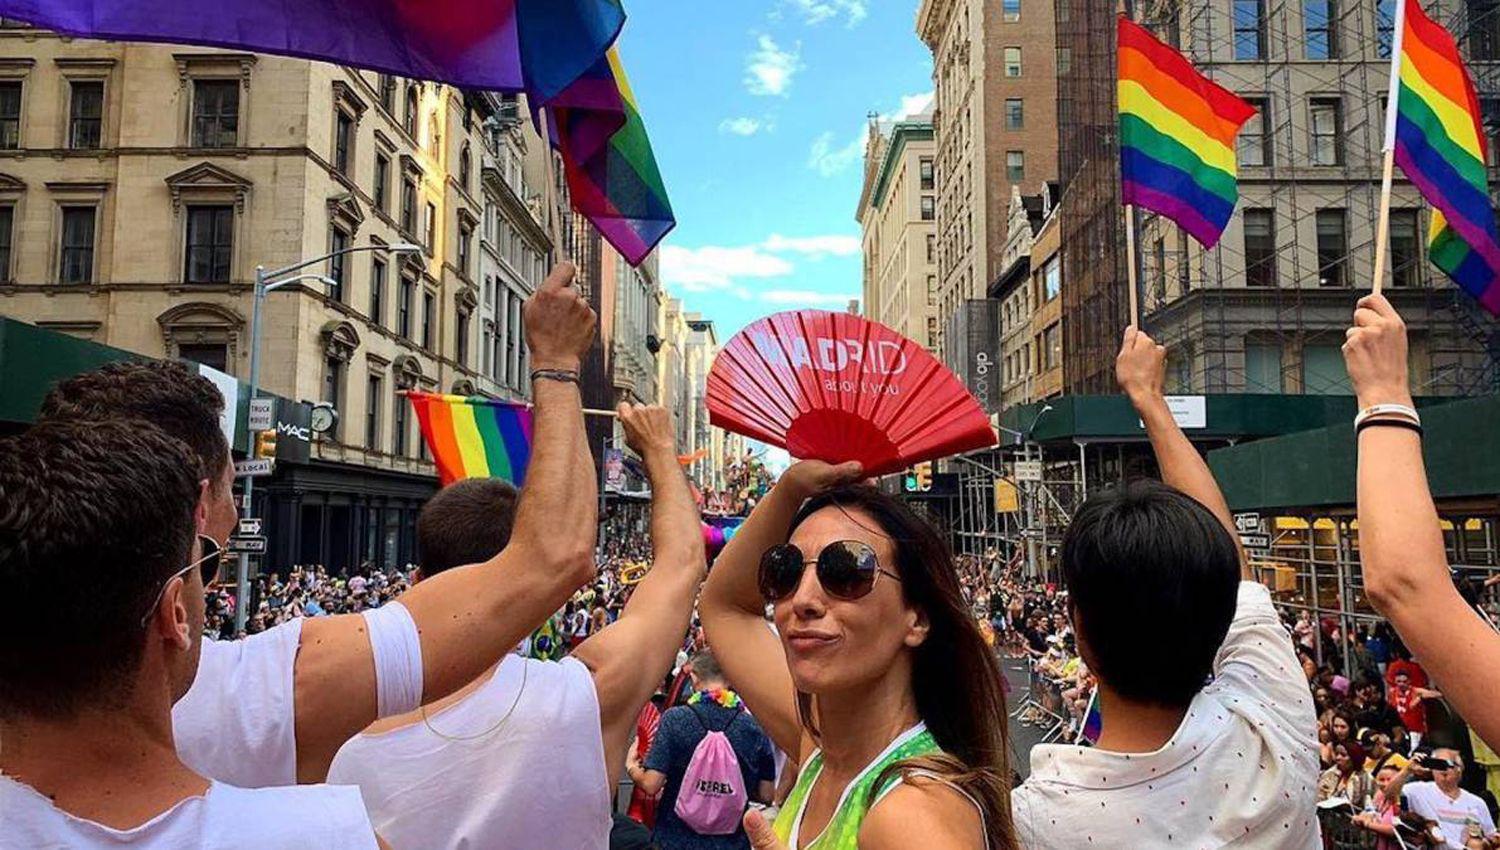 iquestPor queacute el Diacutea del Orgullo LGBT se celebra el 28 de junio